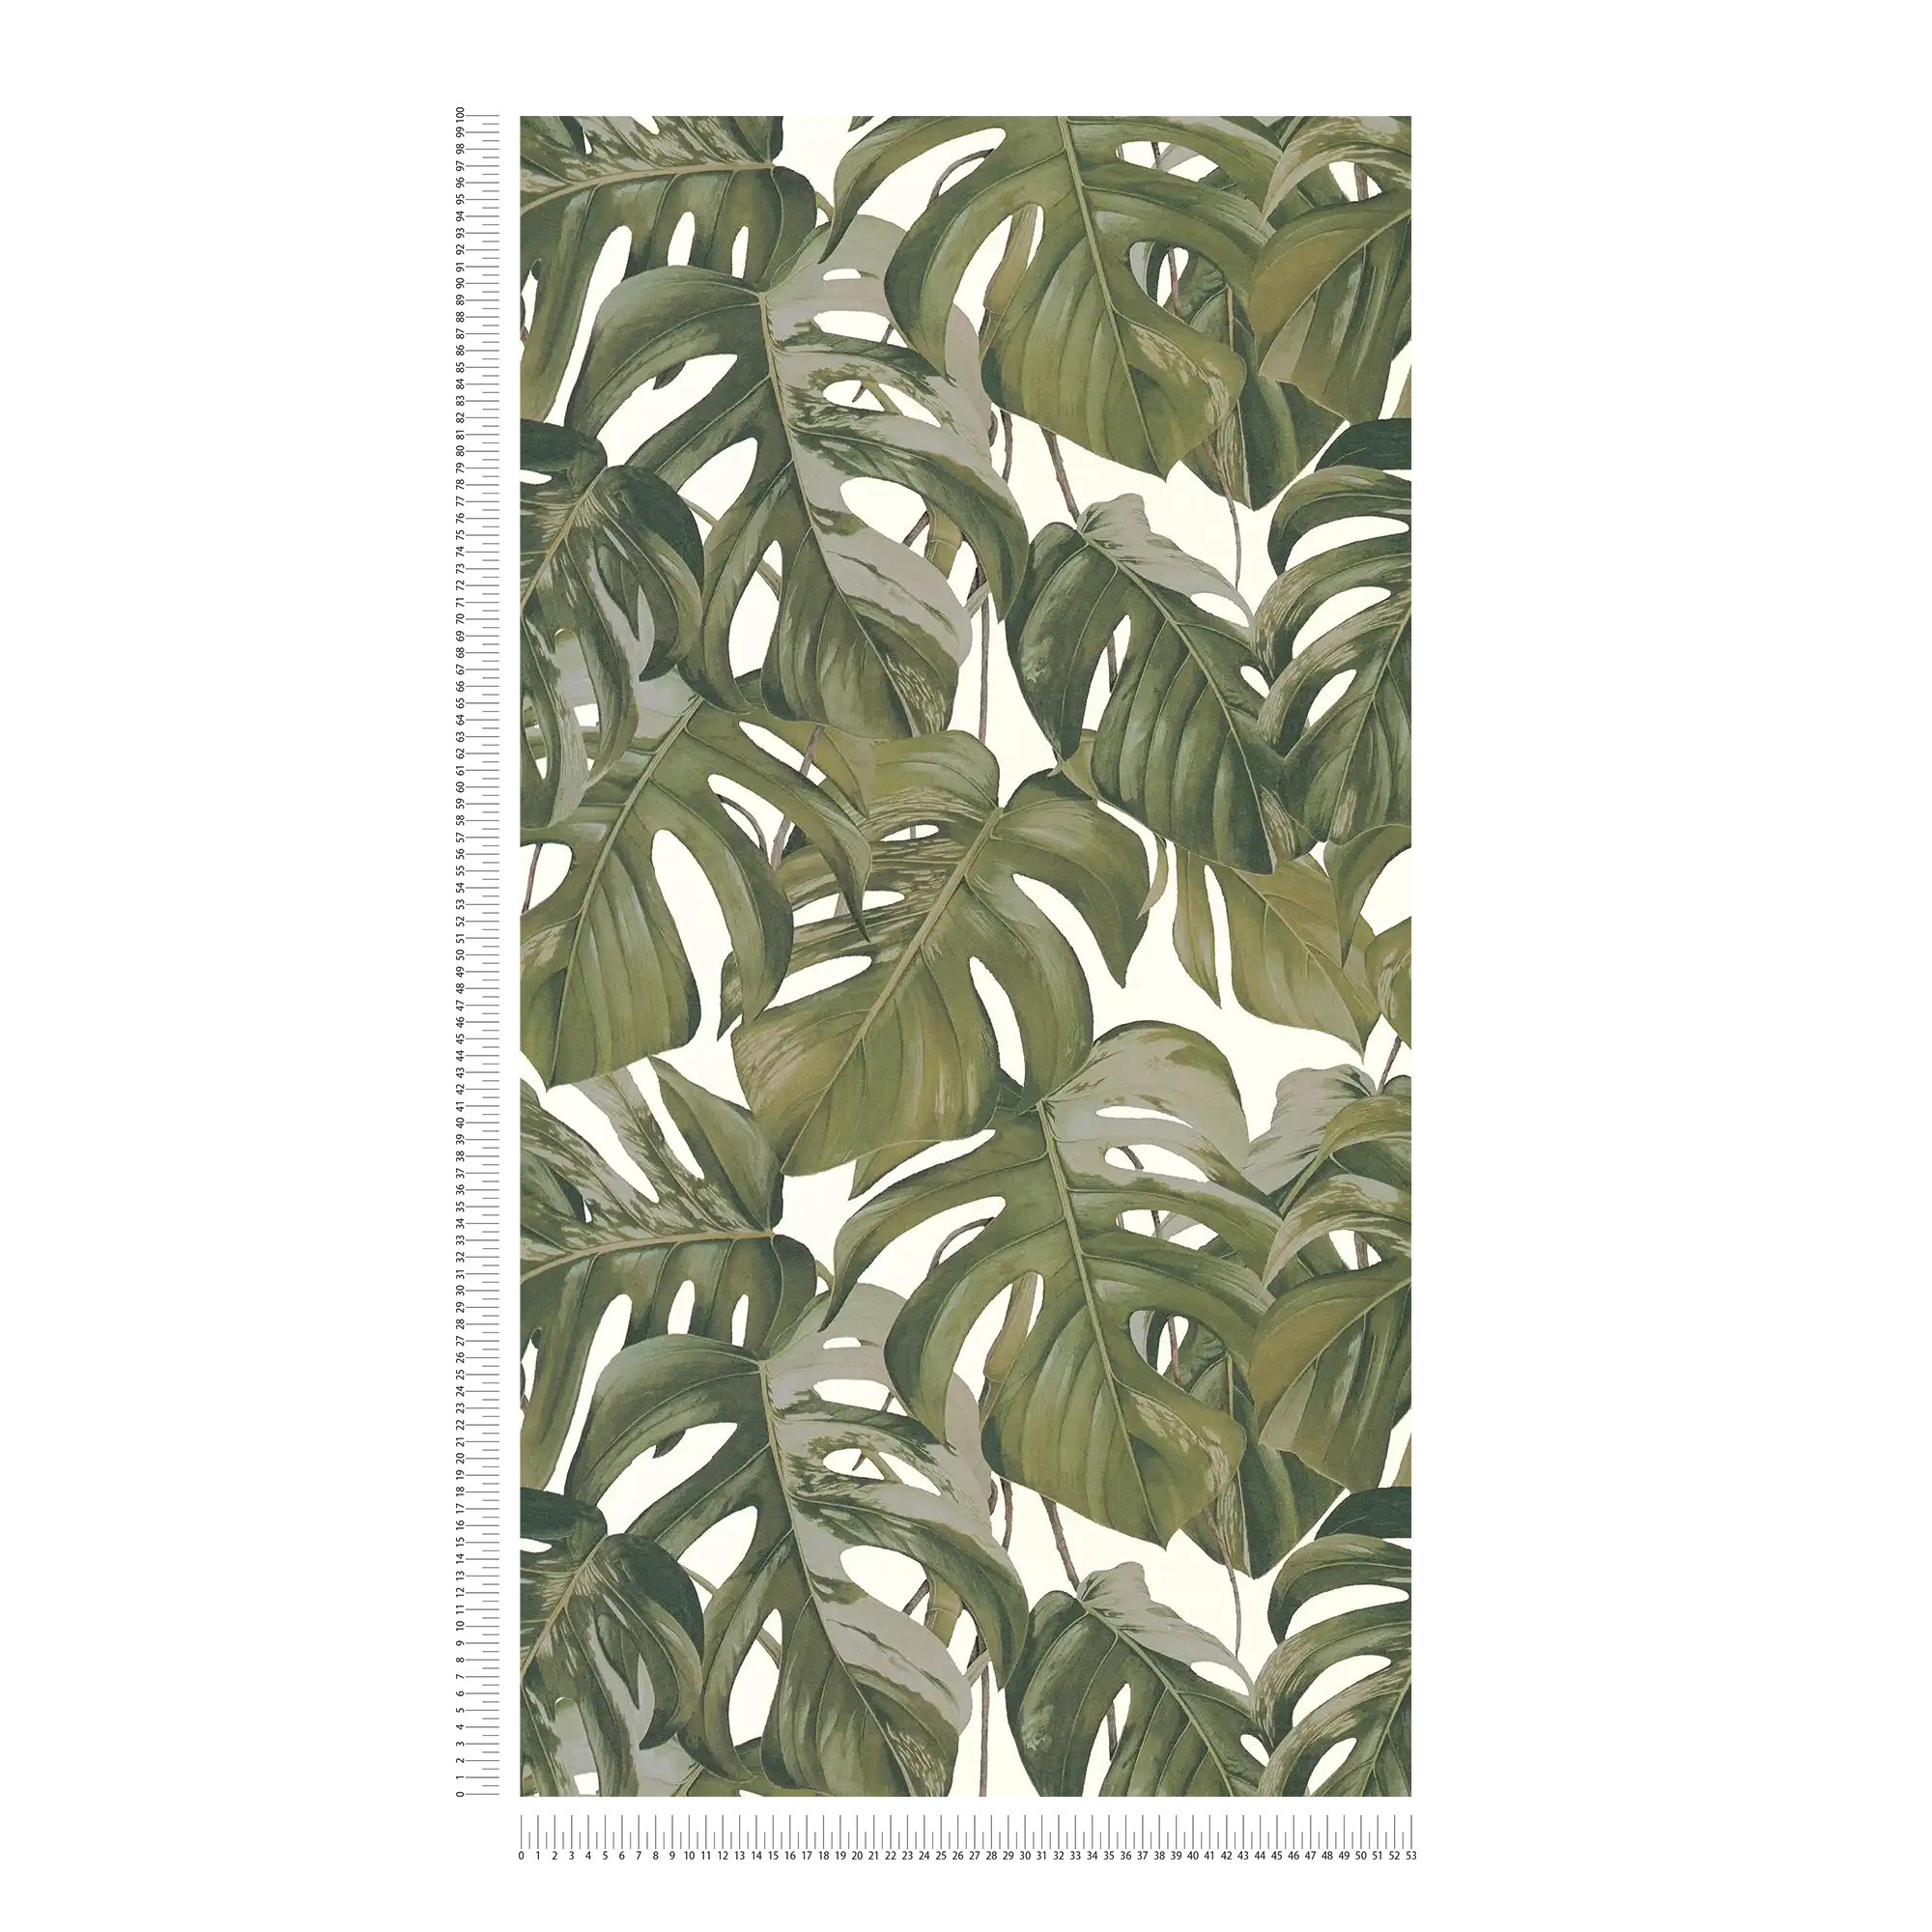             Vliesbehang Monstera bladeren patroon - grijs, groen, wit
        